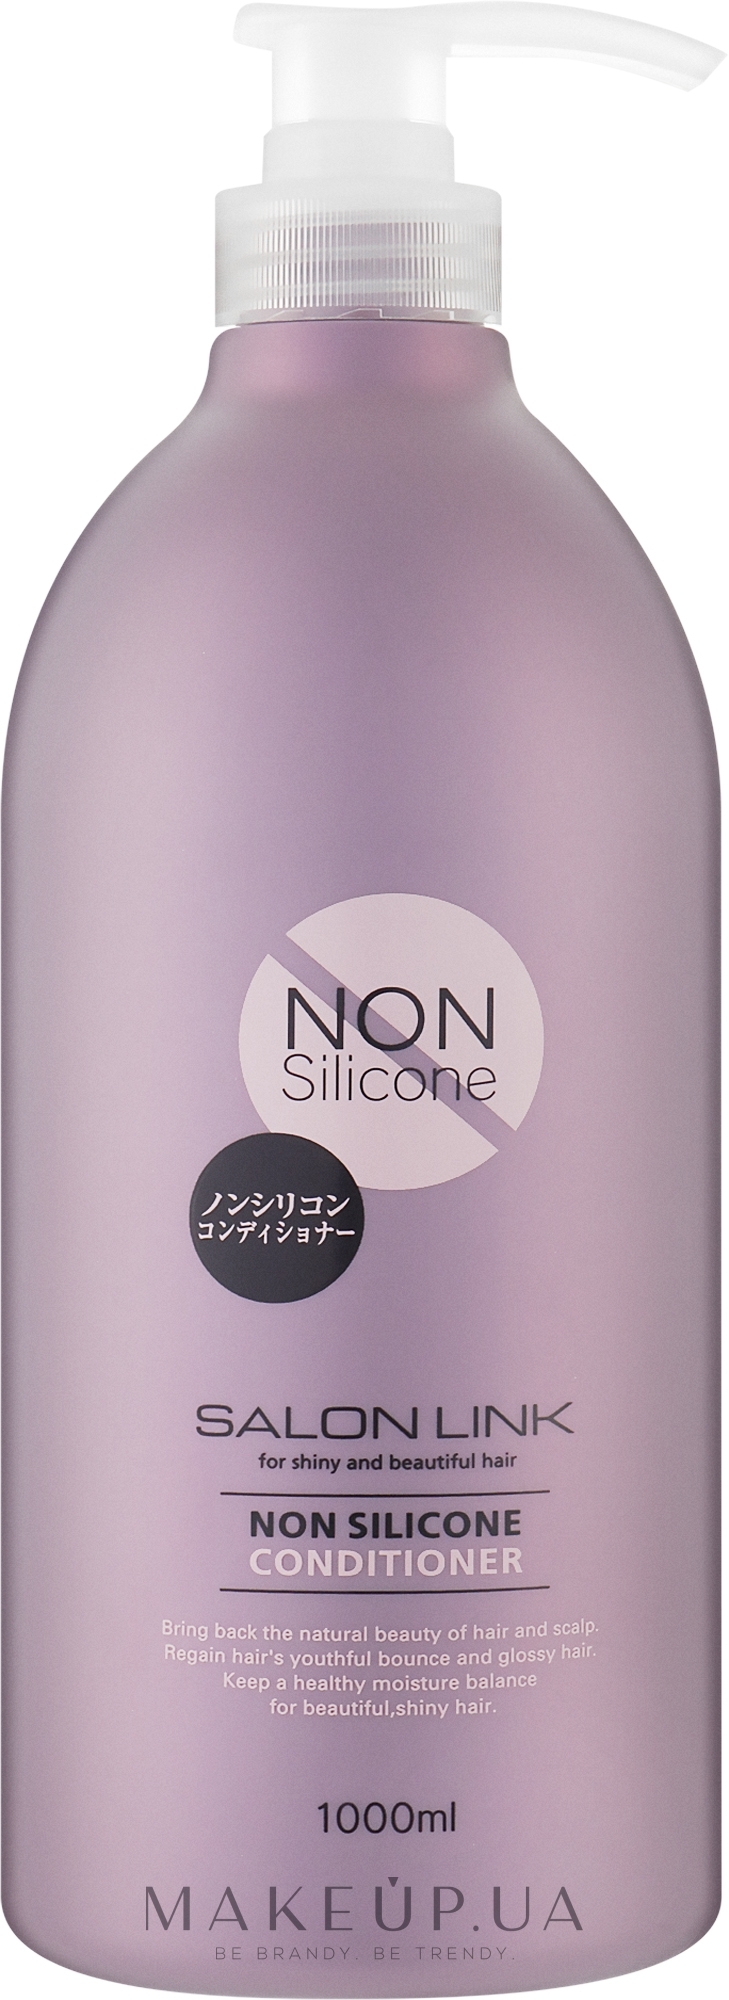 Зволожуючий кондиціонер для волосся - Kumano Cosmetics Salon Link Non Silicon Conditioner — фото 1000ml